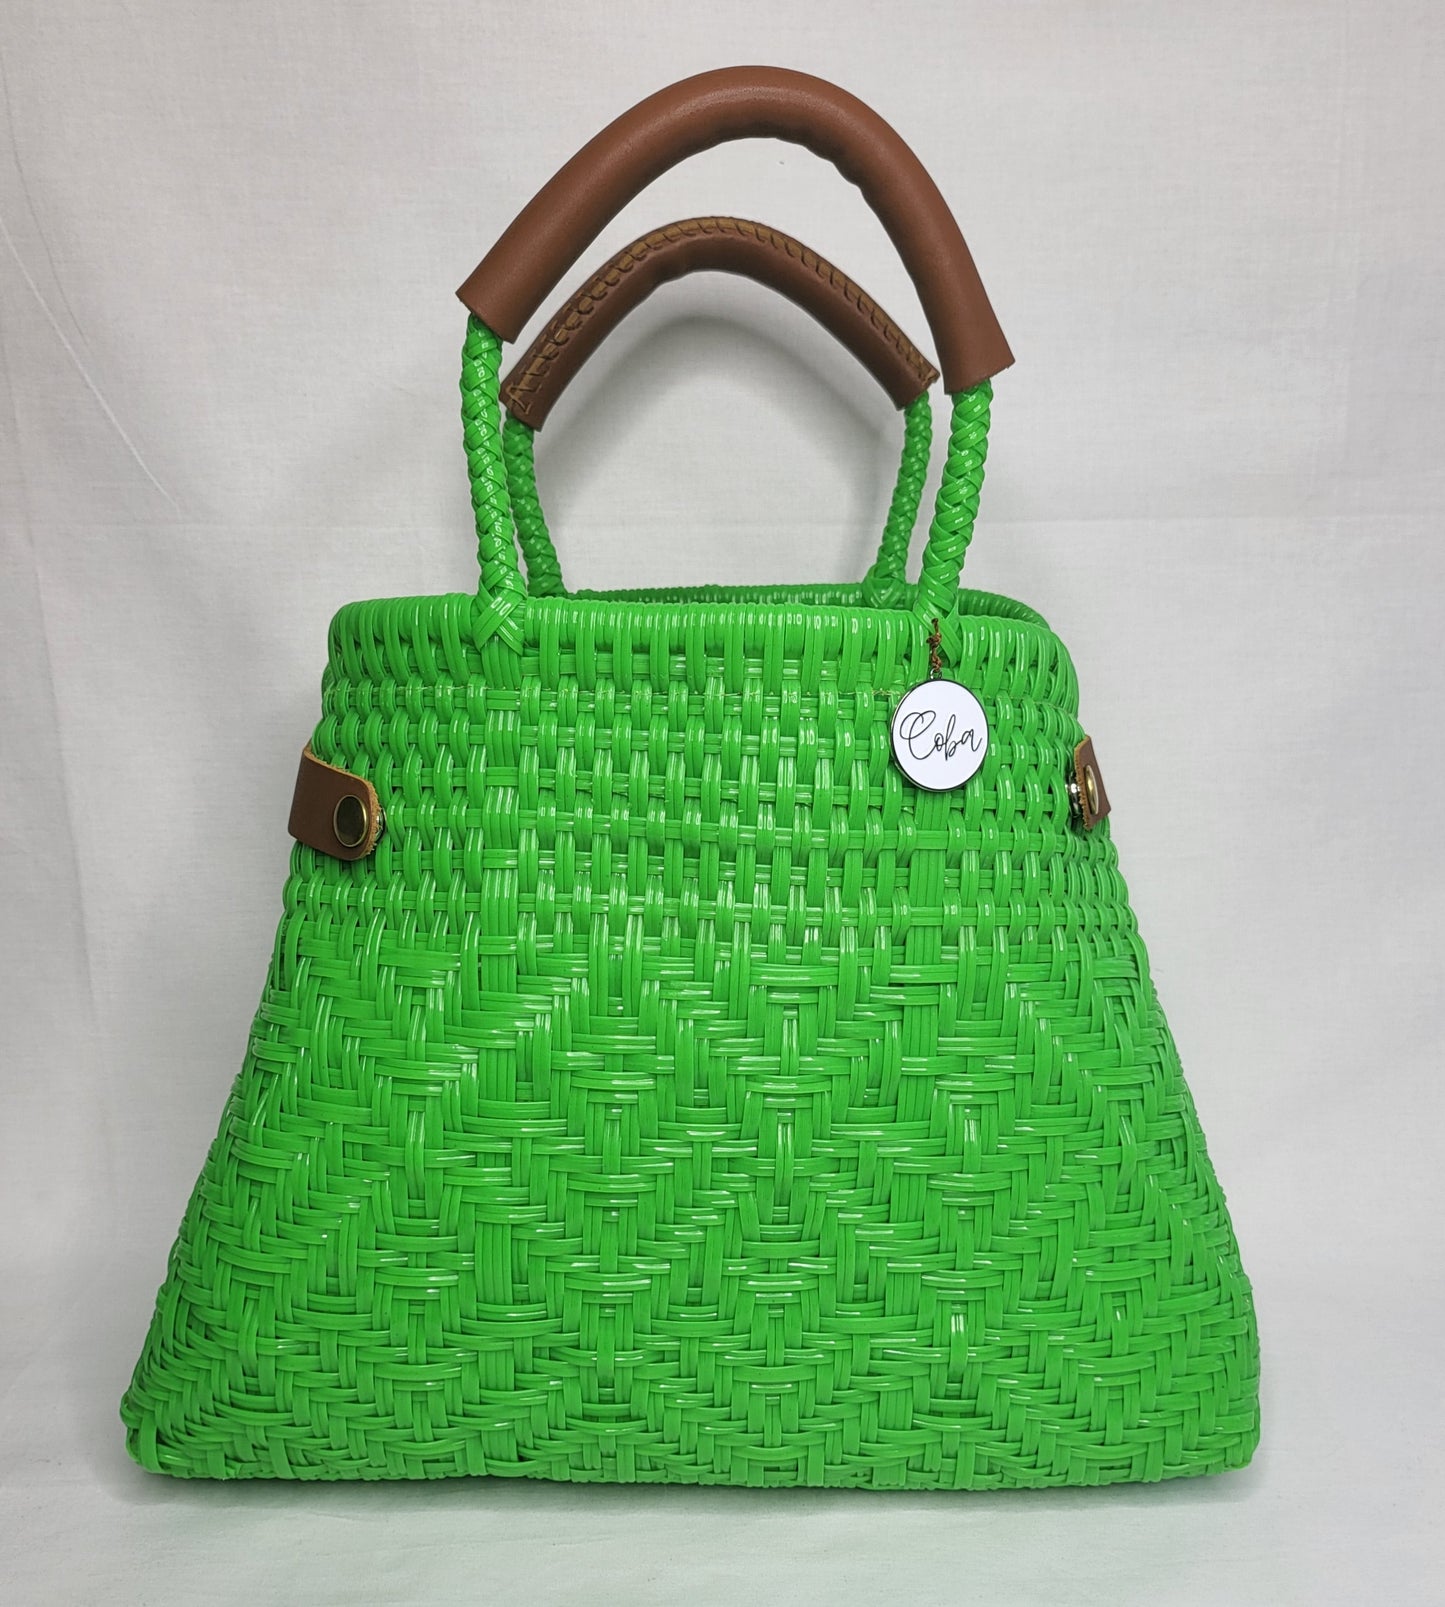 Lola Bucket Bag - Lime Green with Tan Handle